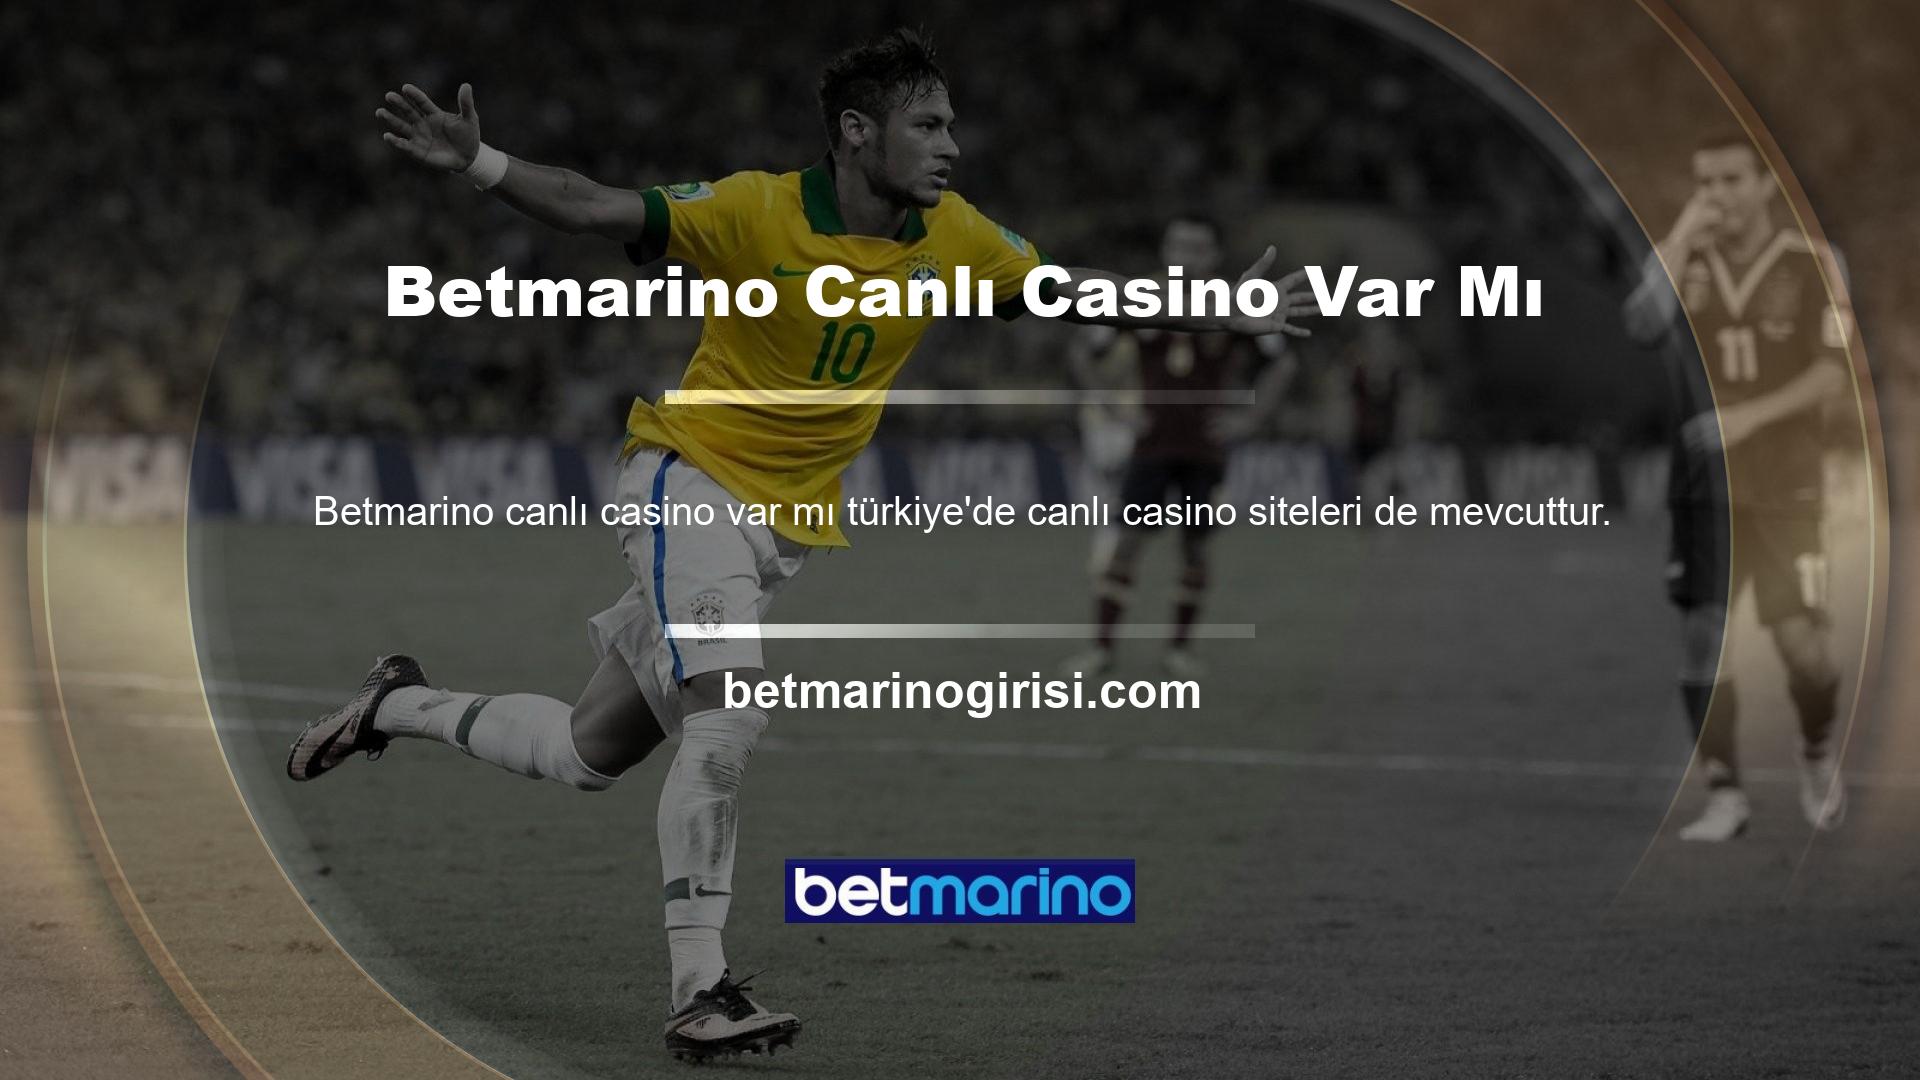 Betmarino canlı casino oyunlarının yüksek kaliteli casino bahisleri oynamanıza olanak sağladığı tanımlanmaktadır